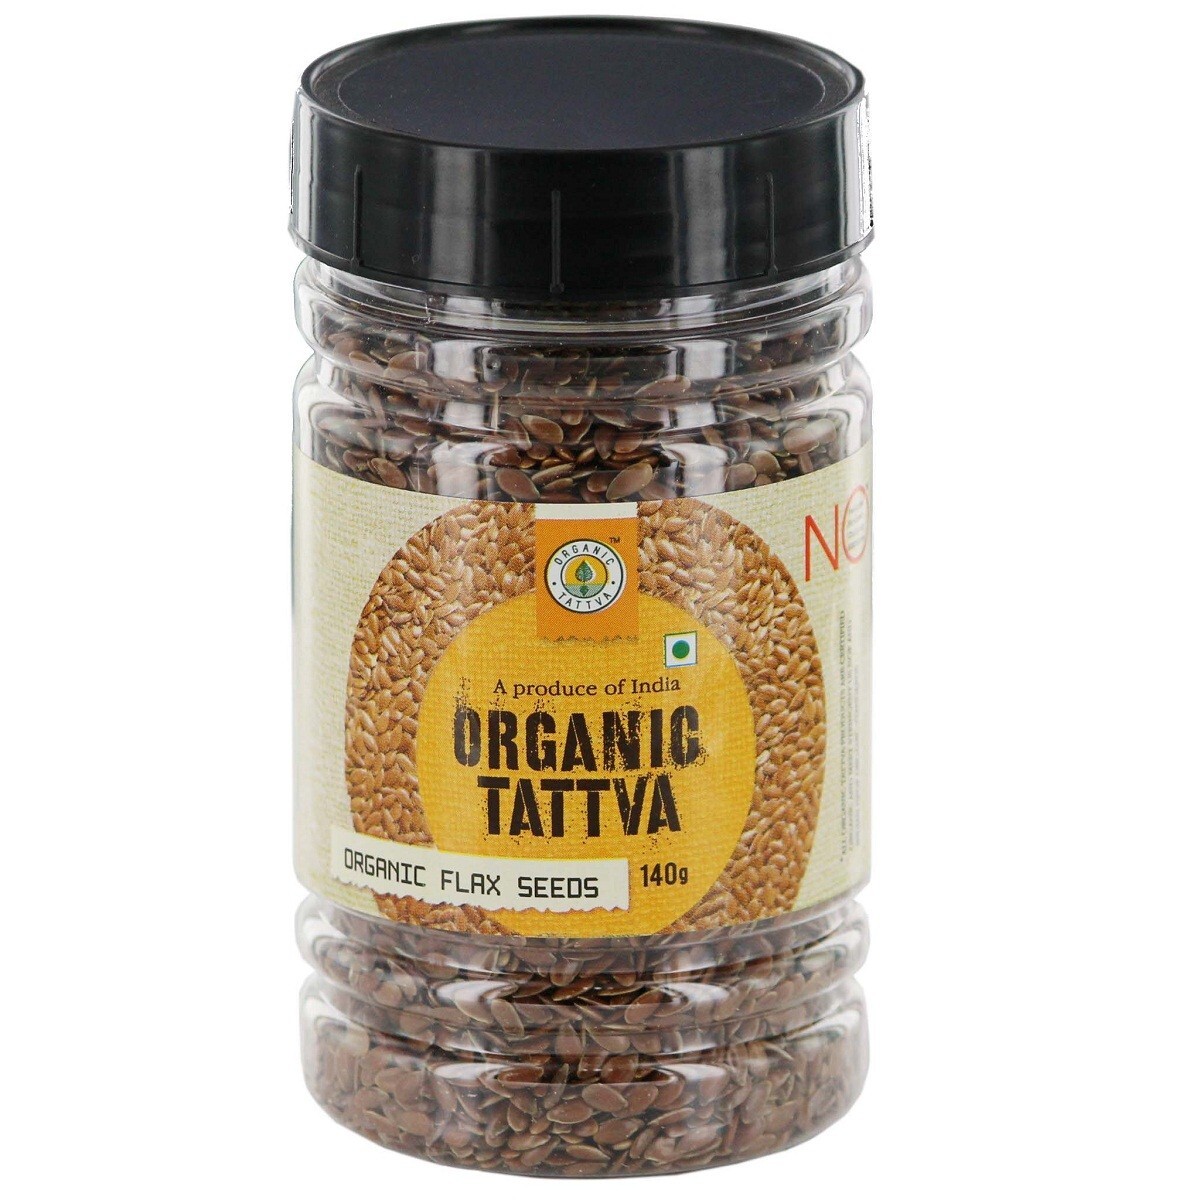 Organic Tattva Organic Flax Seeds 100g